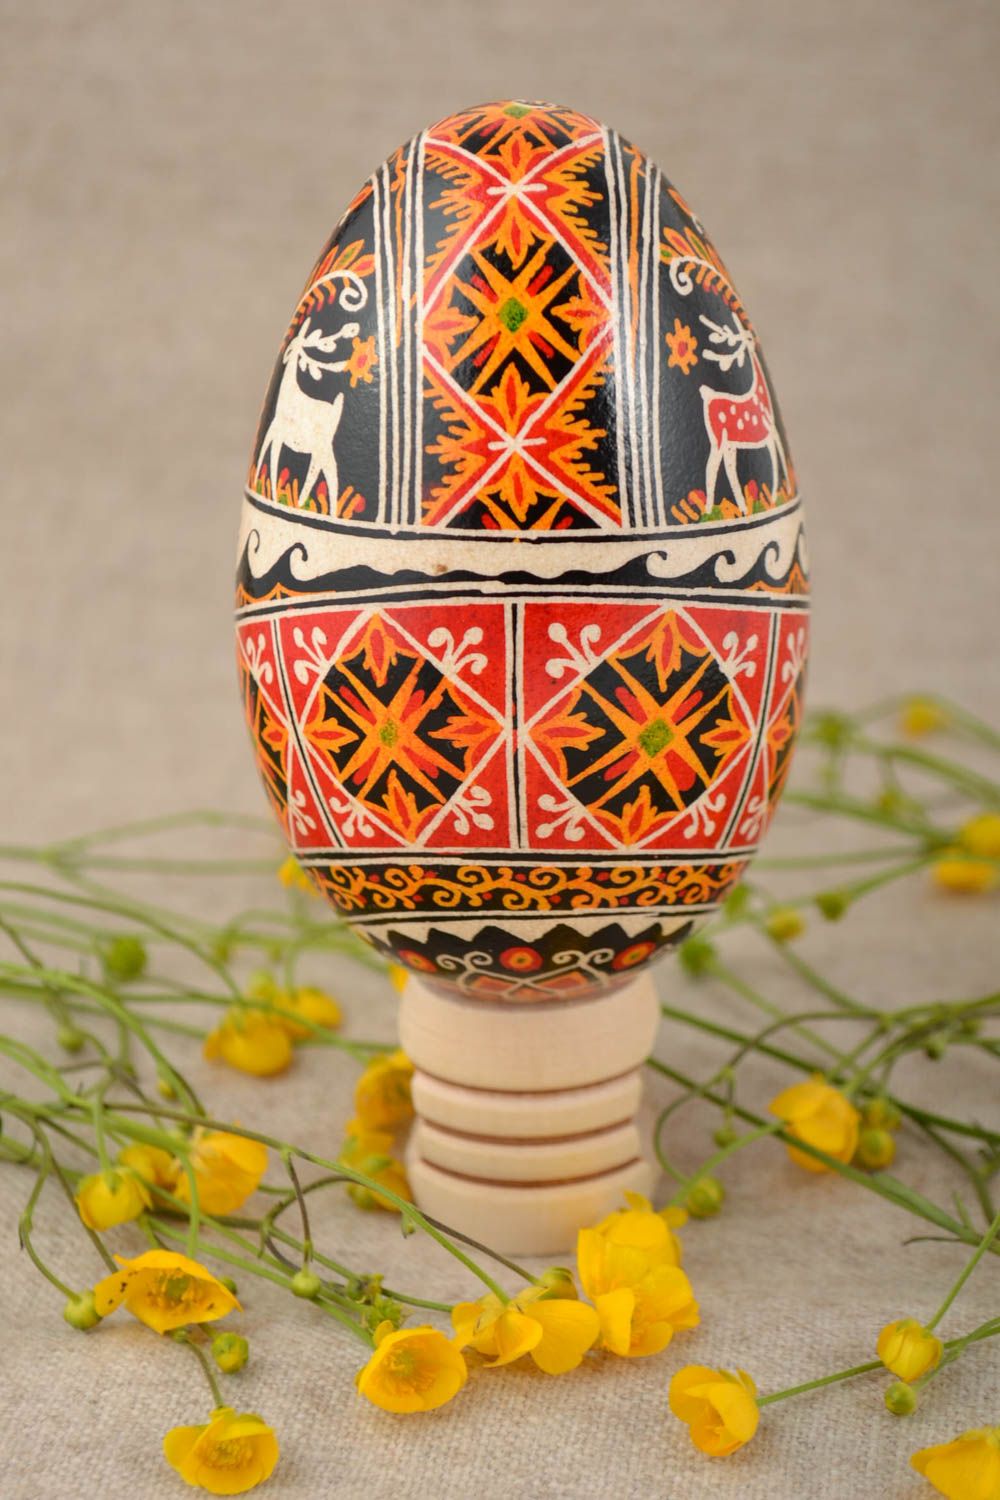 Писанка на гусином яйце красивая цветная для подарка на Пасху ручной работы фото 1